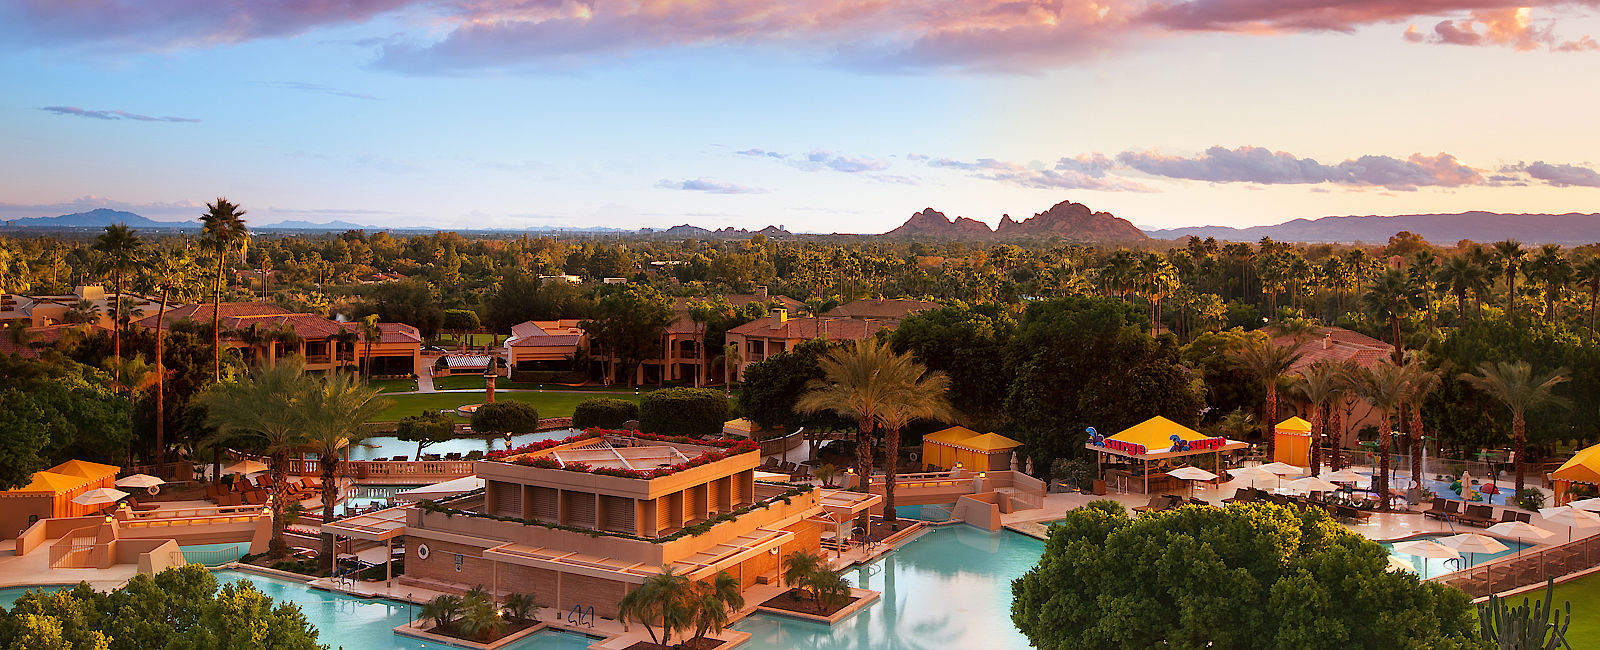 HOTEL TIPPS
 The Phoenician, a Luxury Collection Resort 
 Exklusive Golfreise in einem weitläufigen Luxushotel 